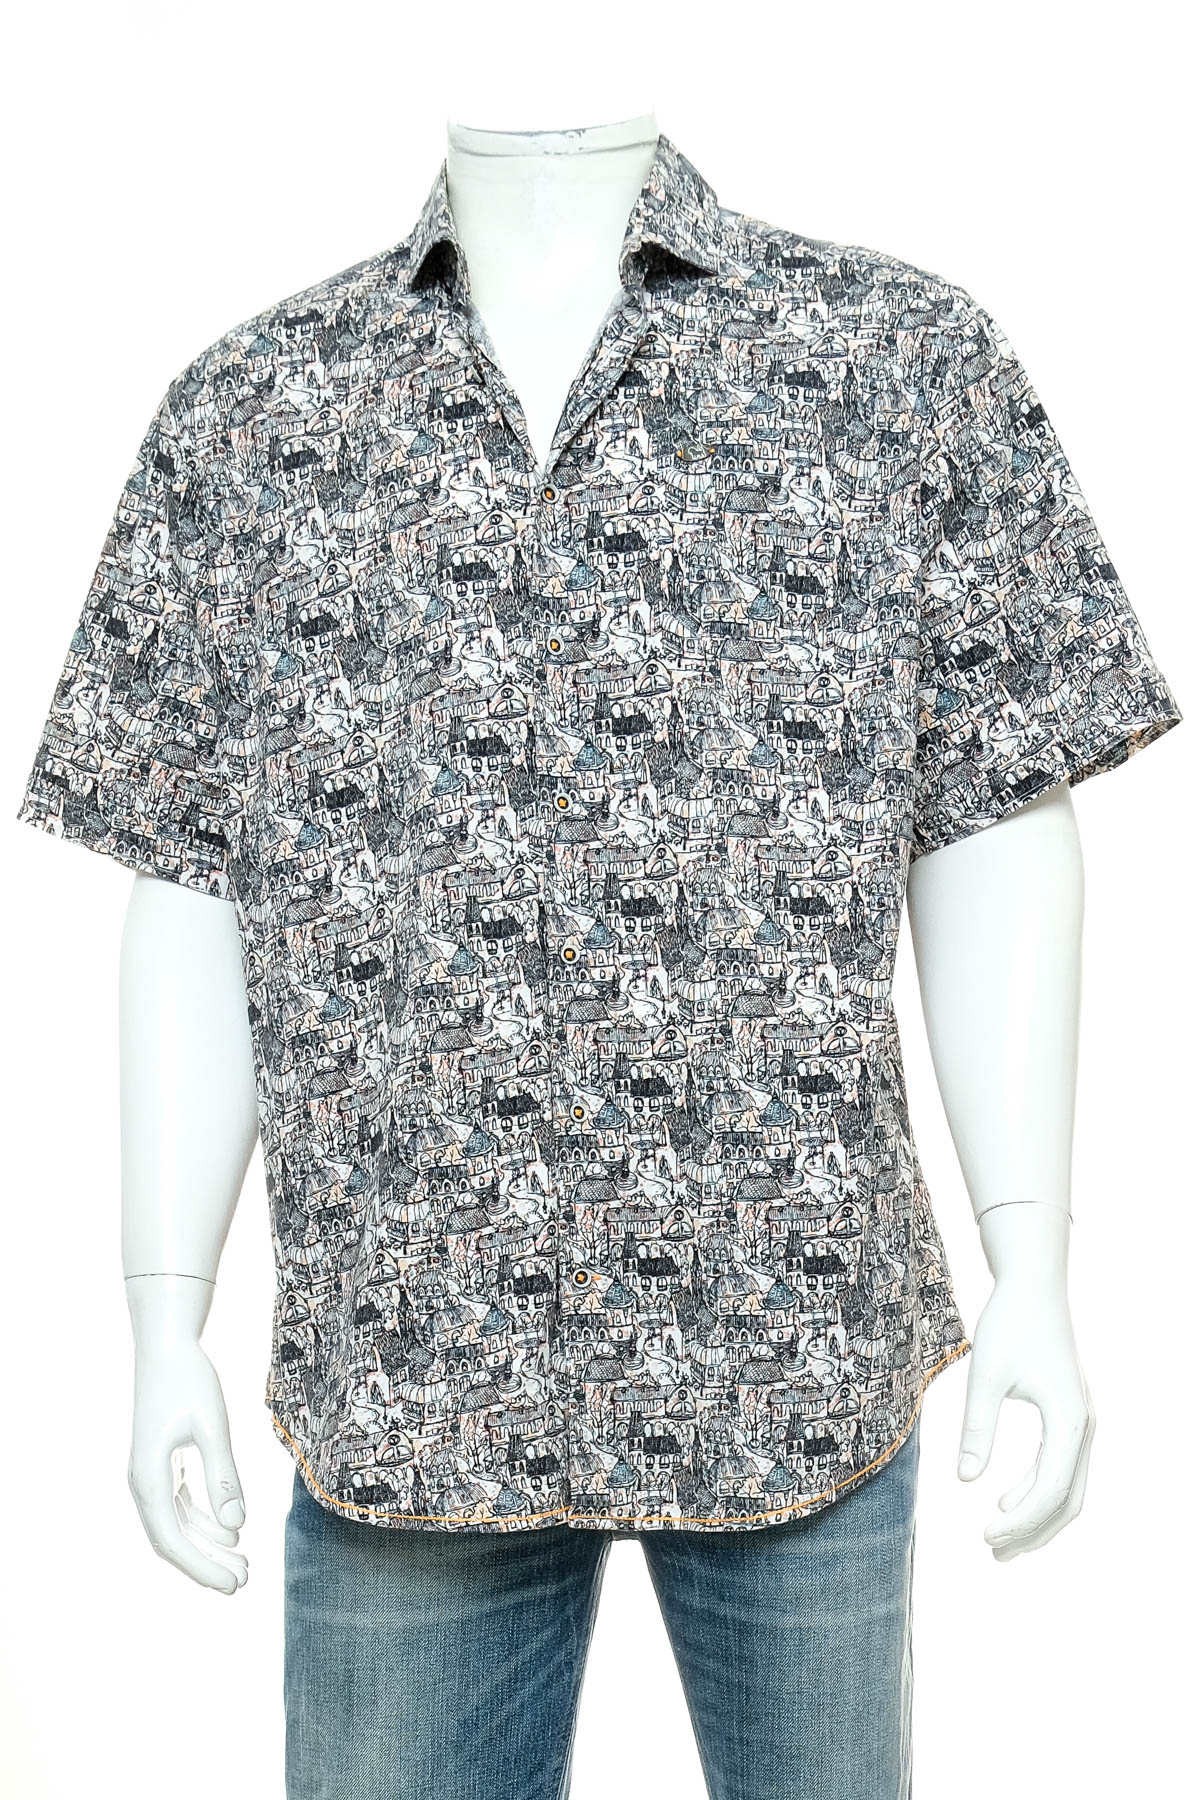 Ανδρικό πουκάμισο - Jean Carriere - 0